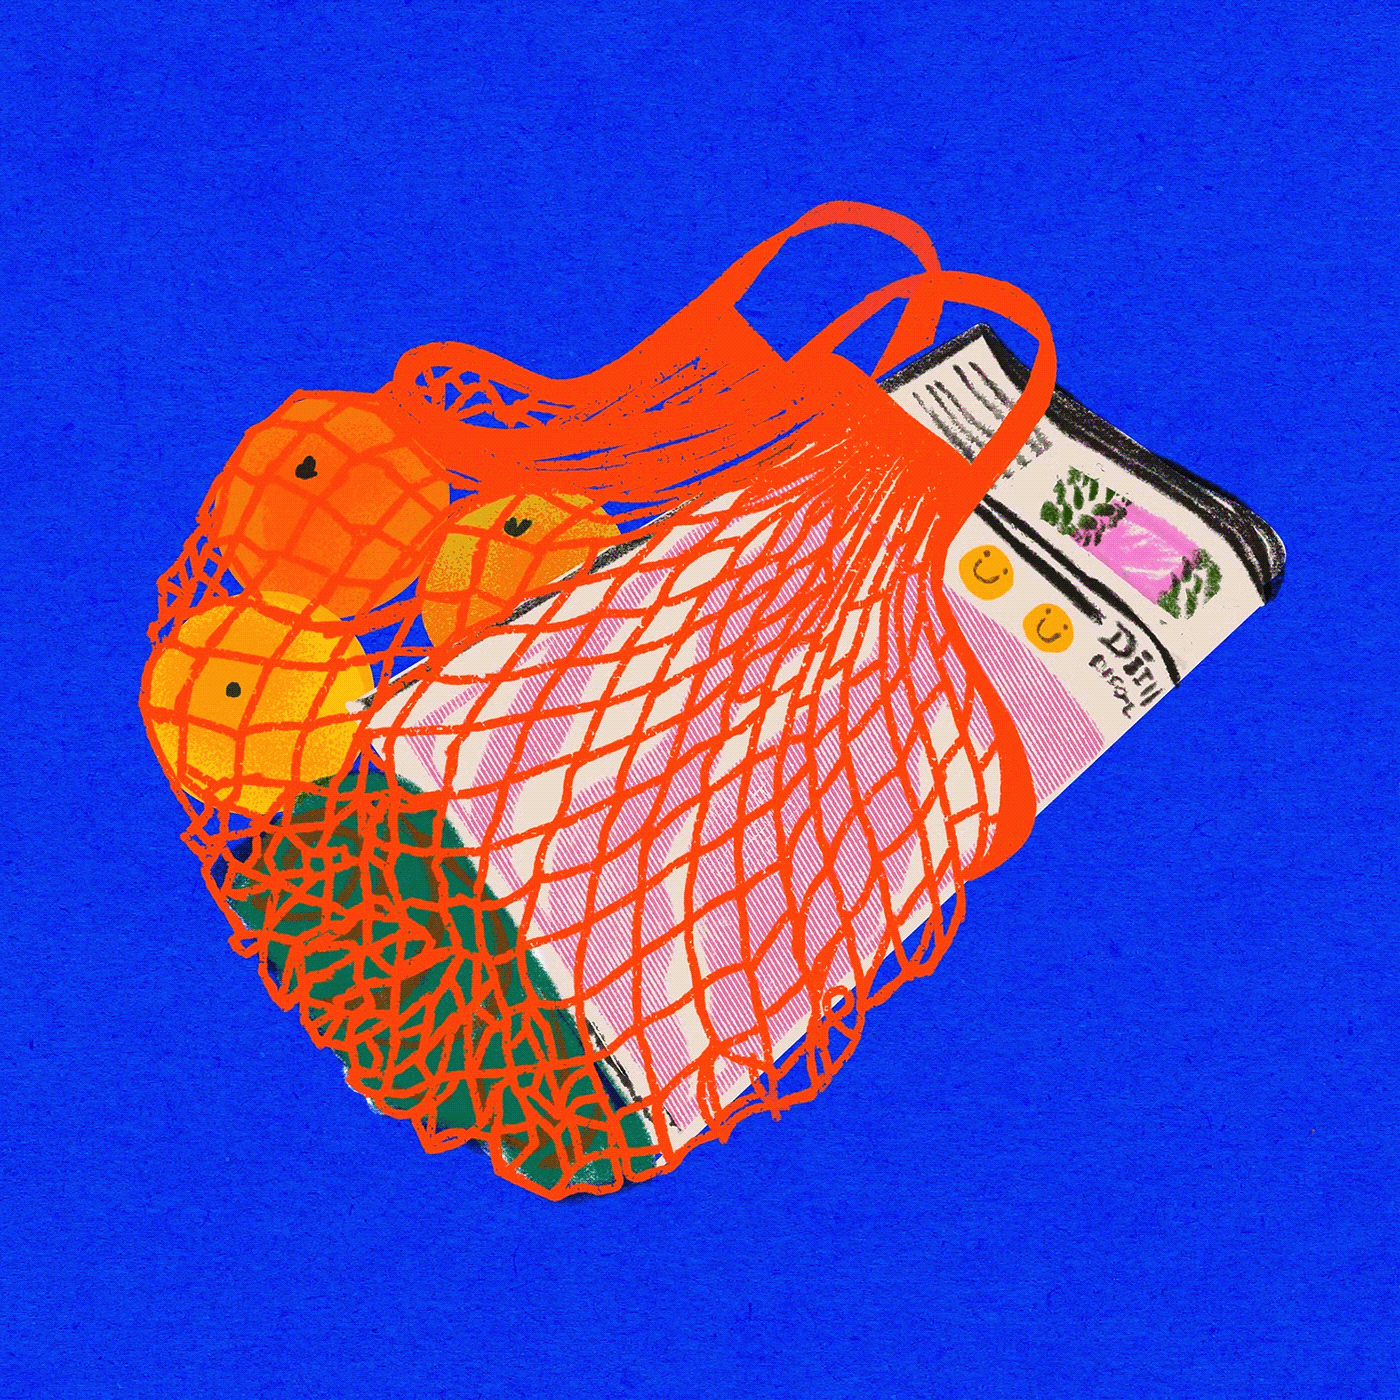 market fruits illustration Textured Illustration Procreate orange blue Italian food food basket fruits basket fruits draw illustration market smile illustration spesa